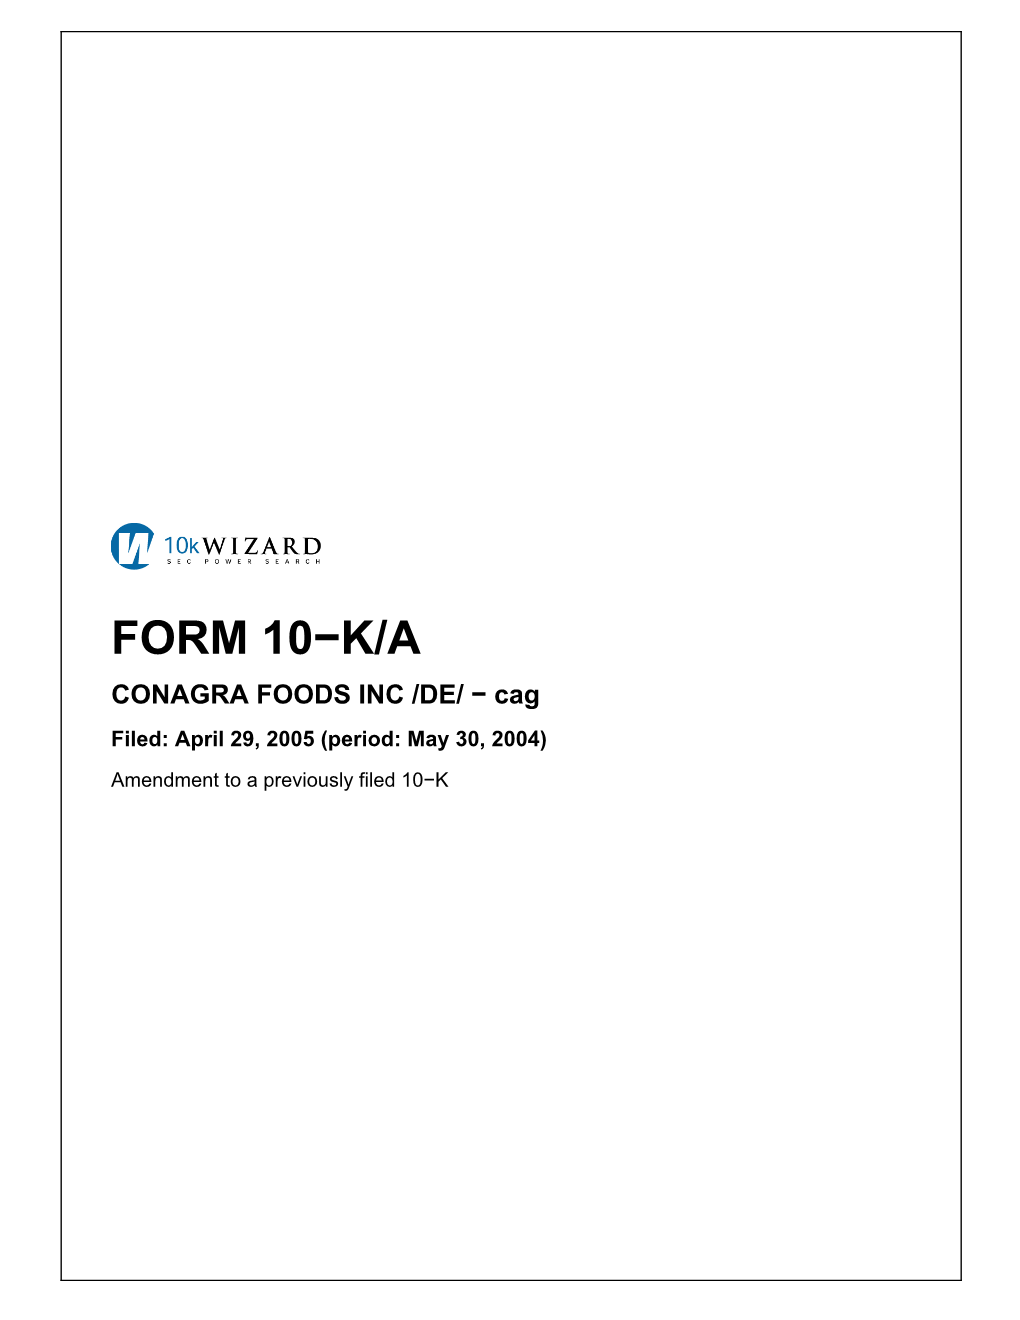 FORM 10−K/A CONAGRA FOODS INC /DE/ − Cag Filed: April 29, 2005 (Period: May 30, 2004)